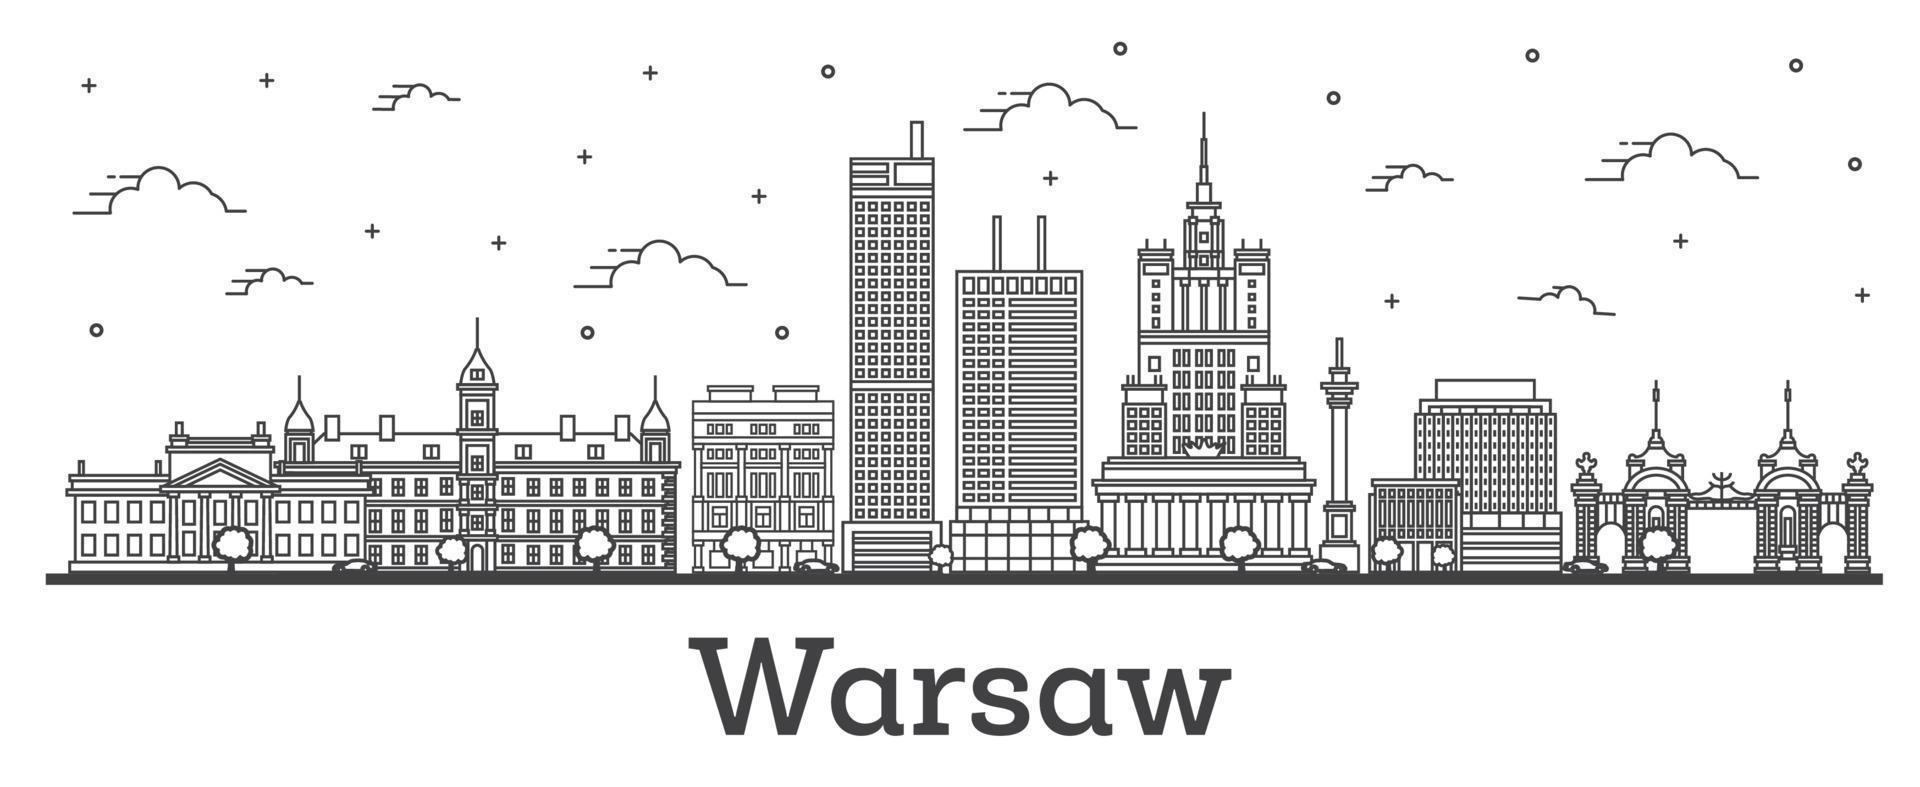 delineie o horizonte da cidade de Varsóvia na Polônia com edifícios modernos isolados em branco. vetor